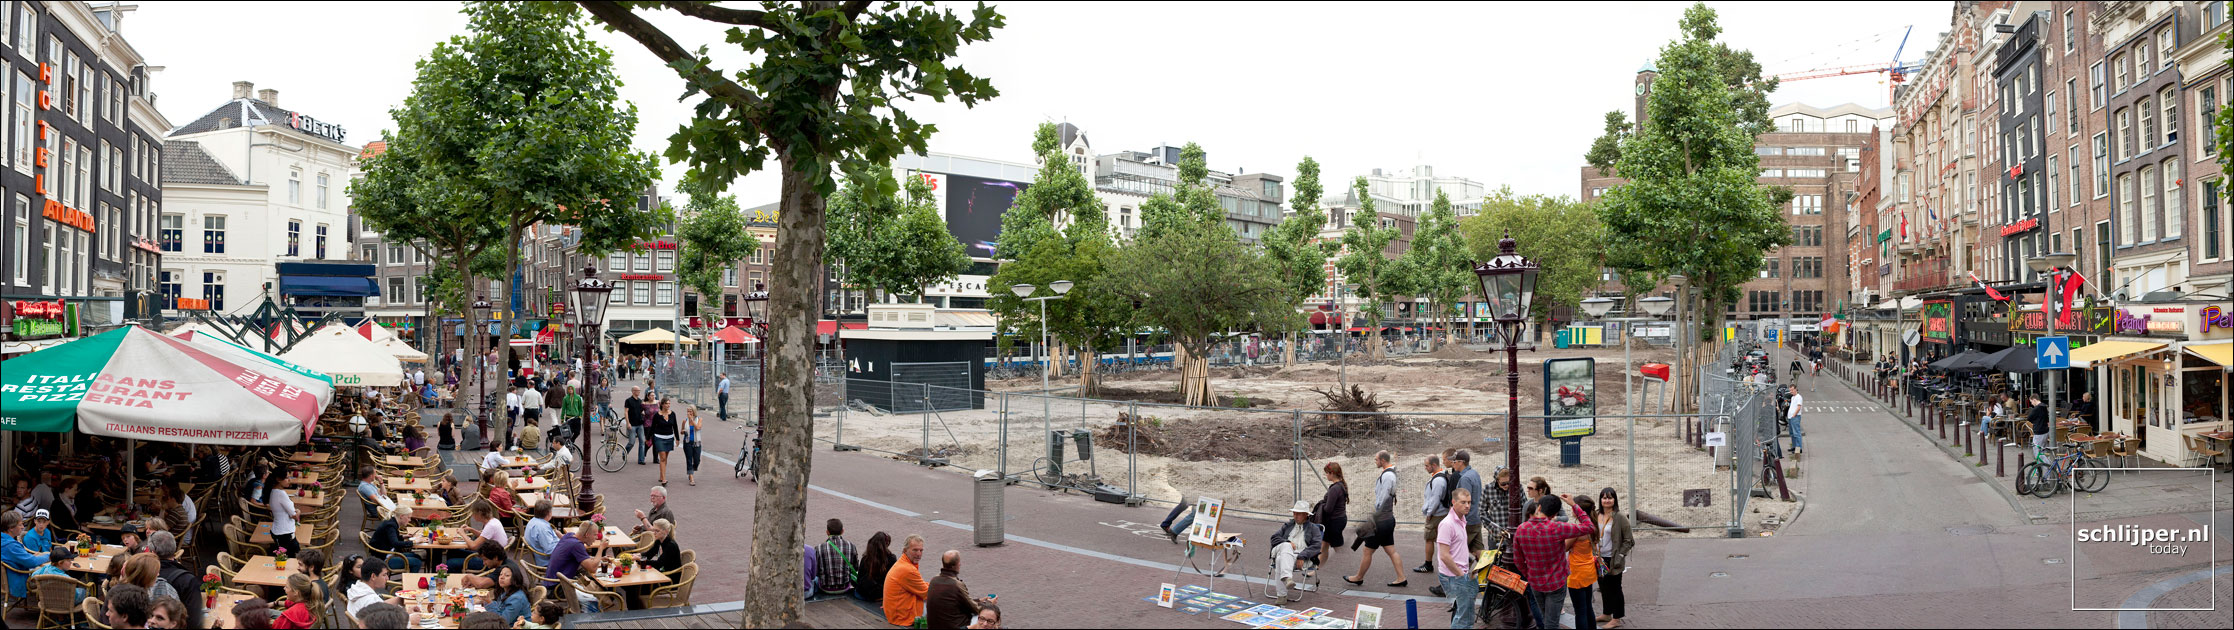 Nederland, Amsterdam, 21 augustus 2009